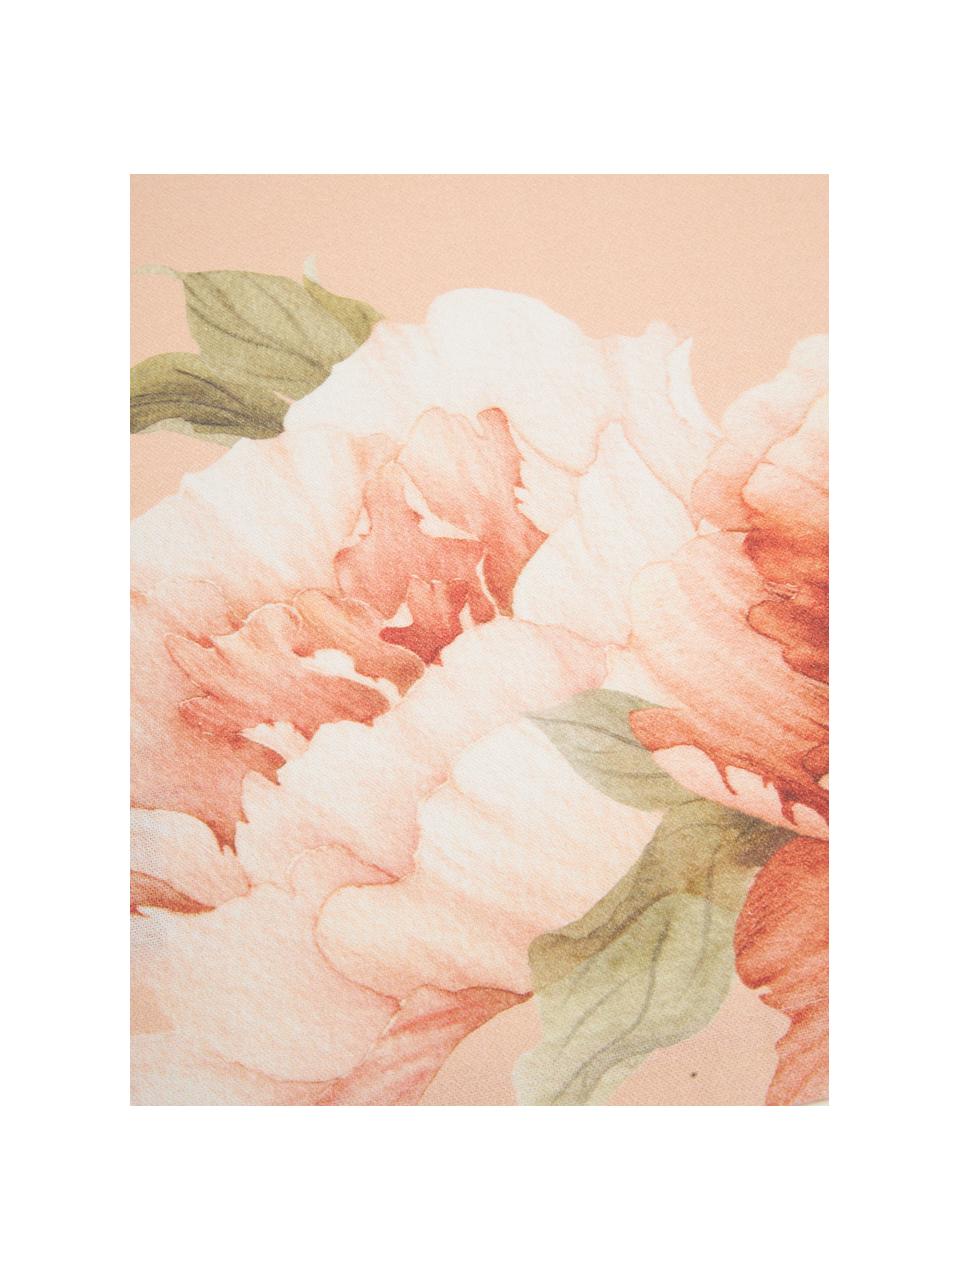 Katoenen tafelloper Peony met bloemmotief, 100% katoen, Roze, met bloemenprint, B 40 x L 145 cm